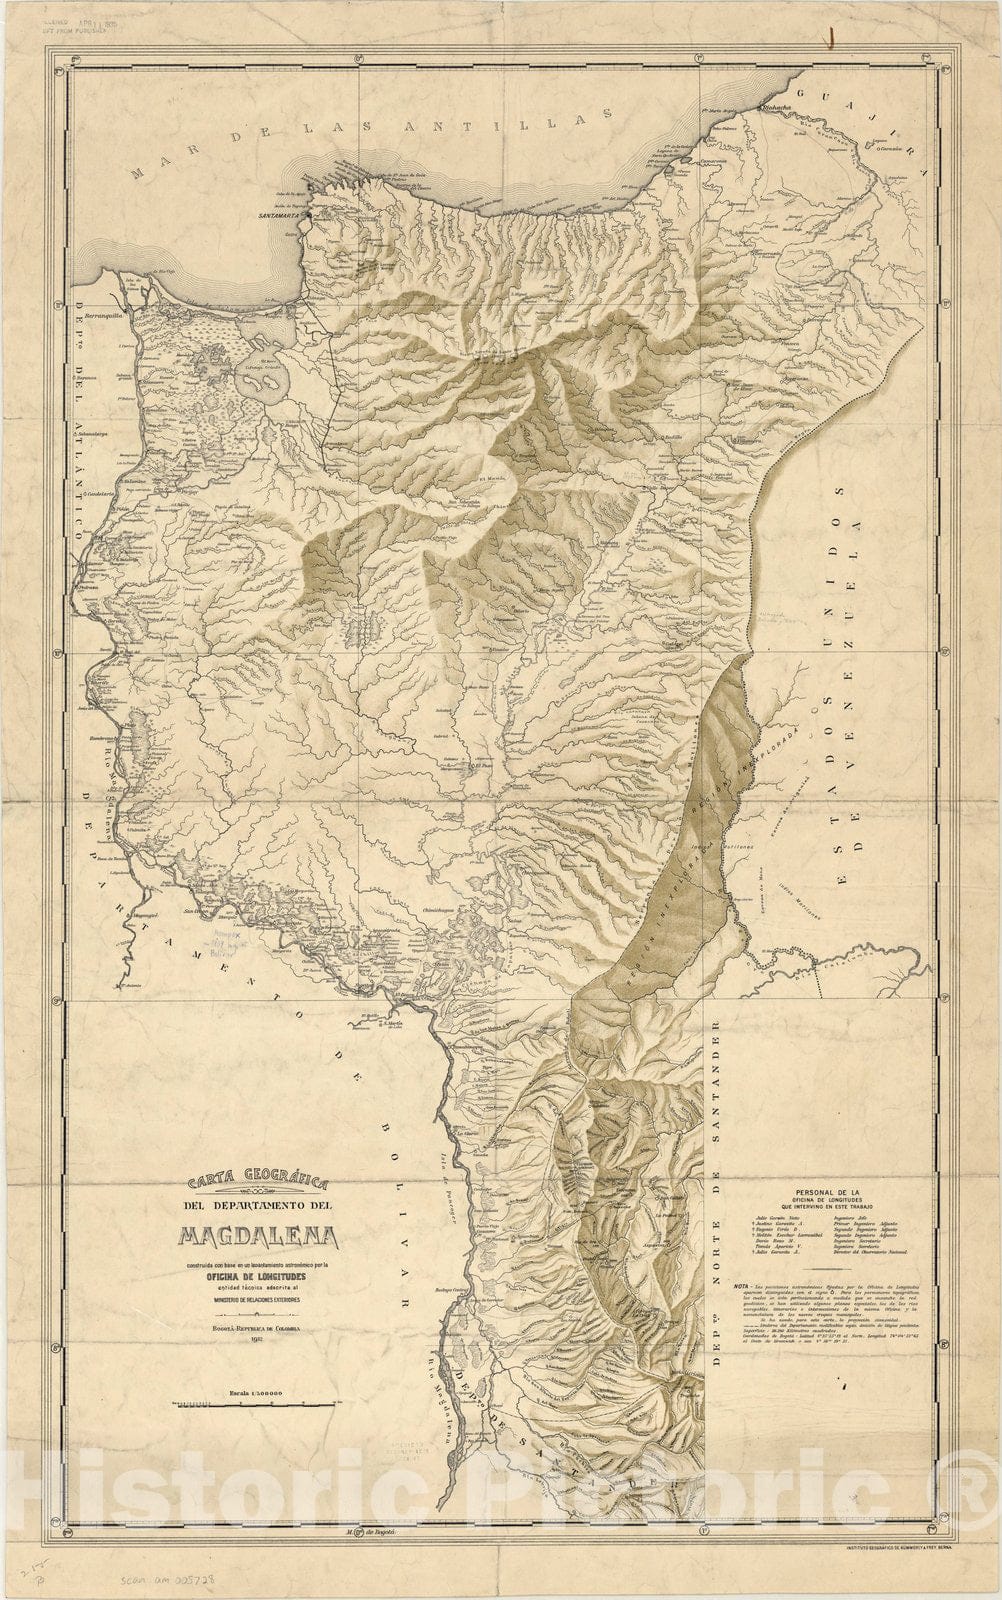 Map : Magdalena, Colombia 1932, Carta geografica del Departamento del Magdalena , Antique Vintage Reproduction